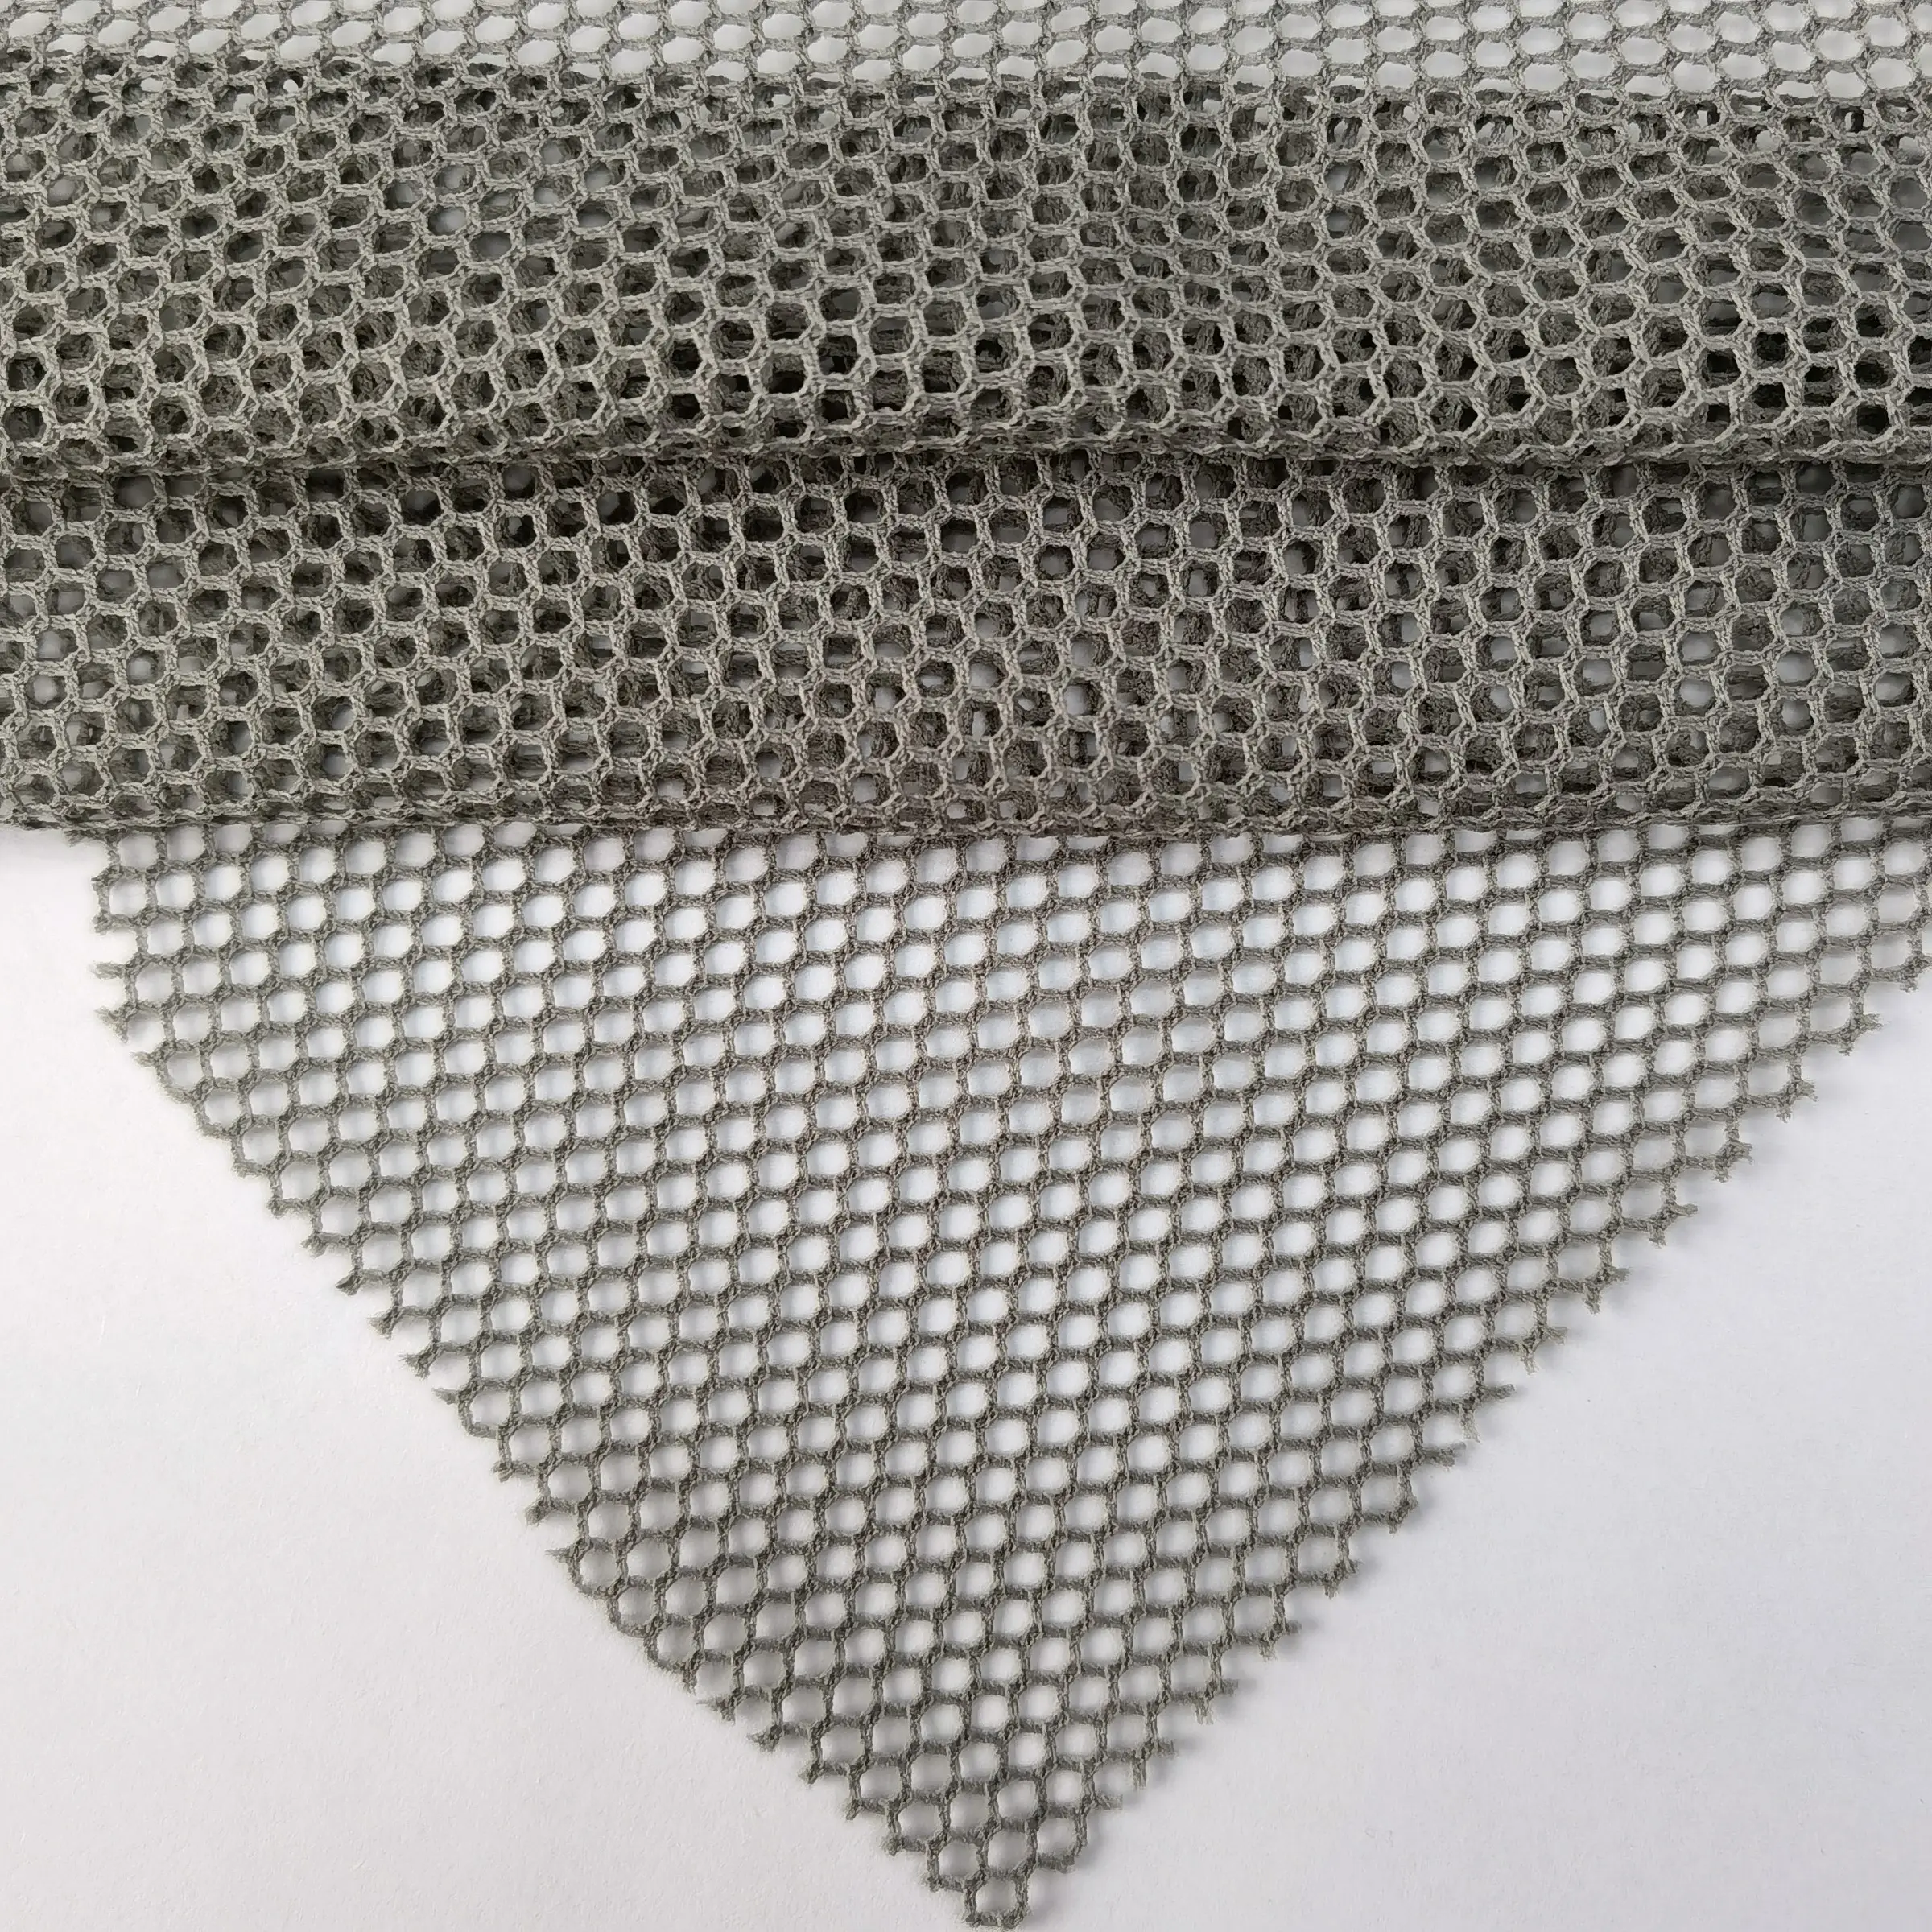 Tela de malla de poliéster de punto de panal hexagonal de poliéster ligero súper suave para ropa interior